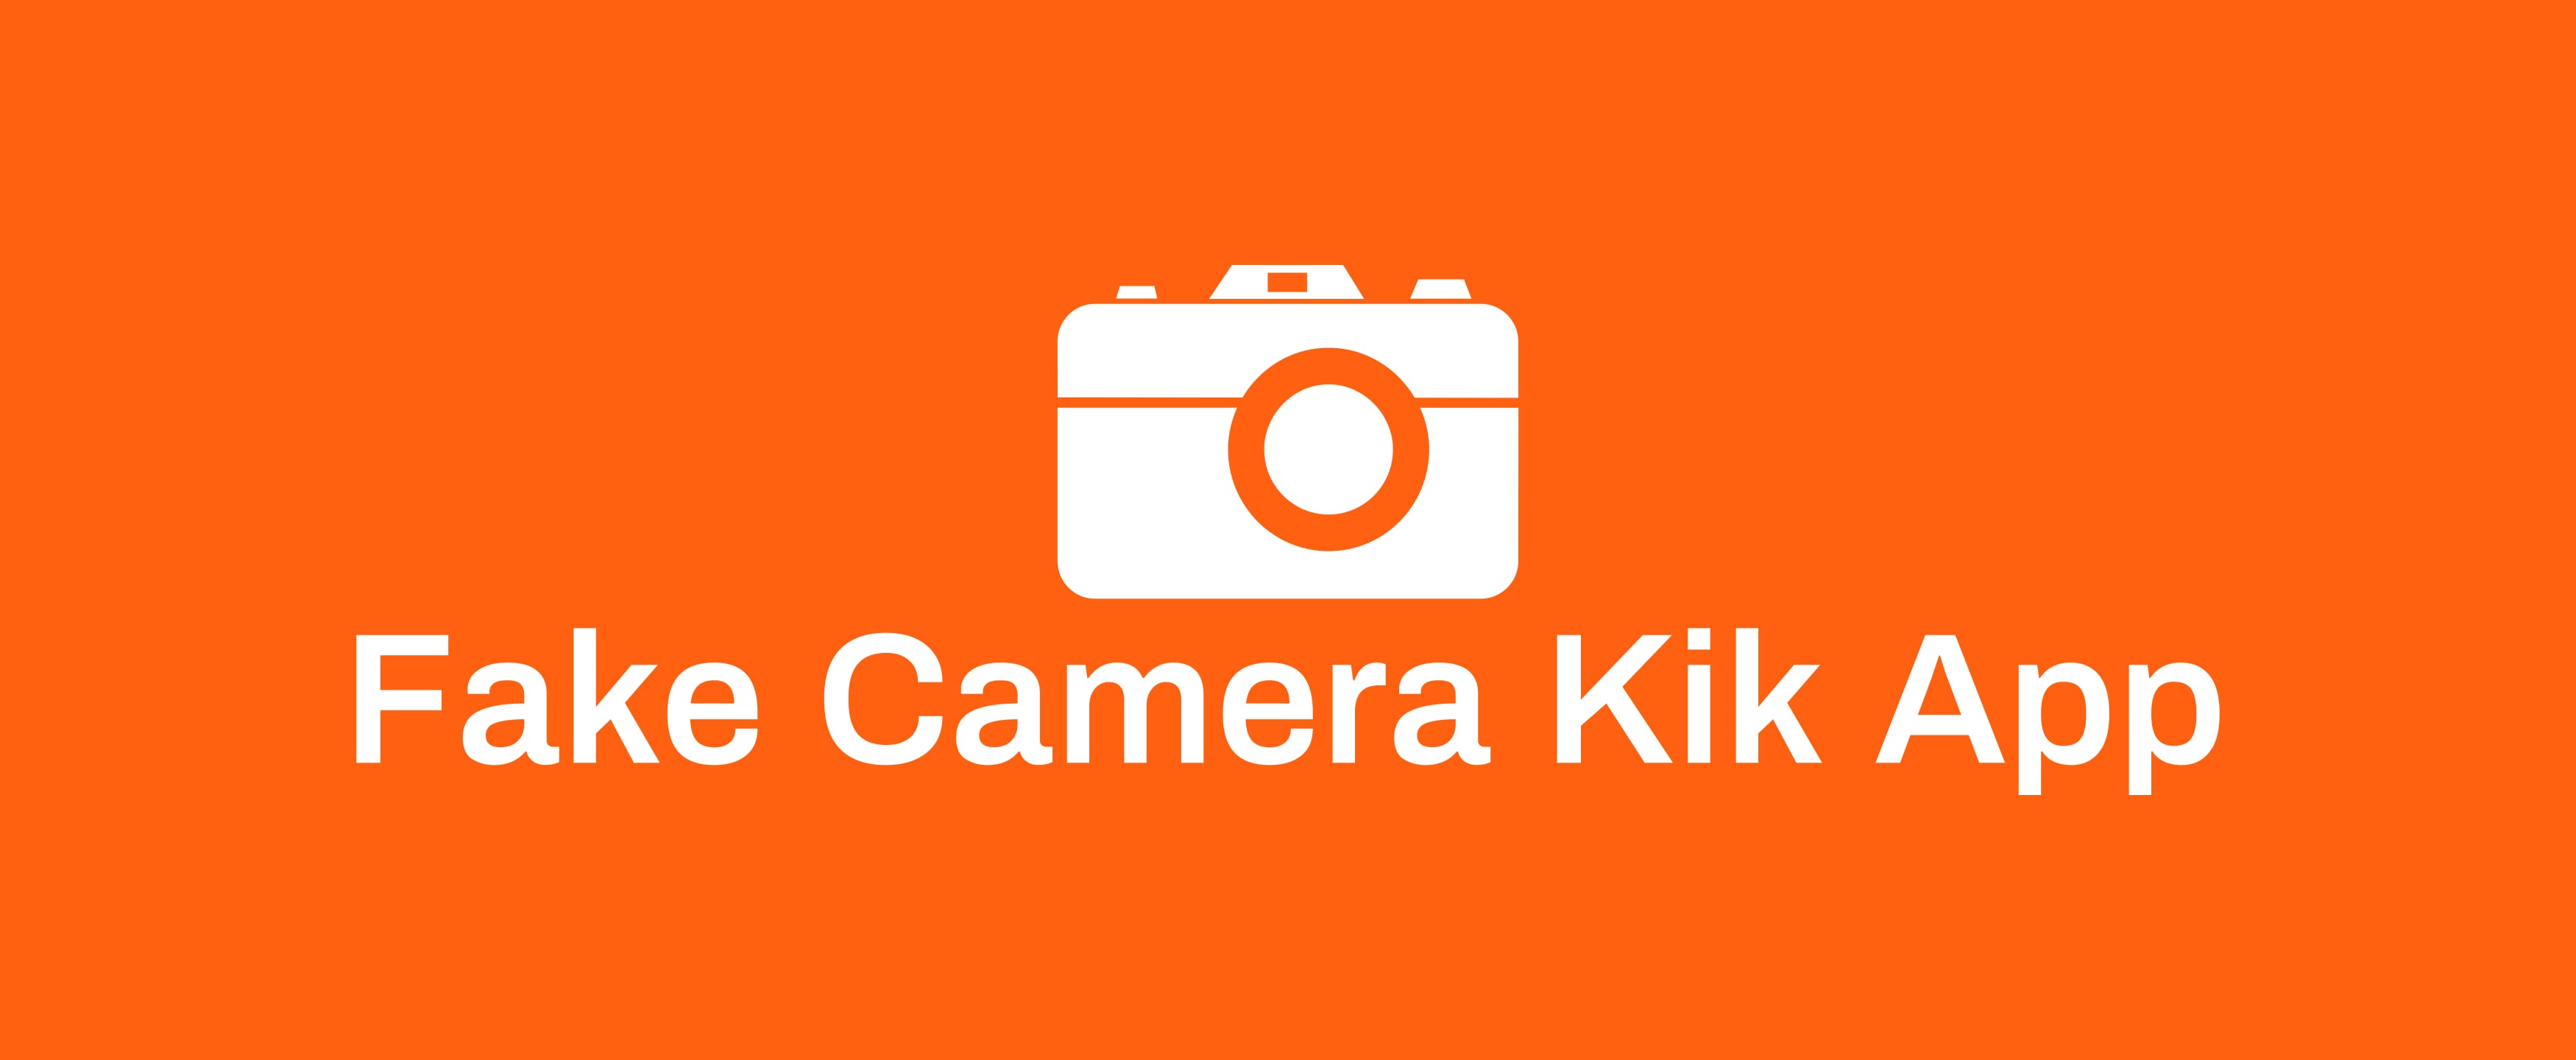 Fake Camera Android | 01